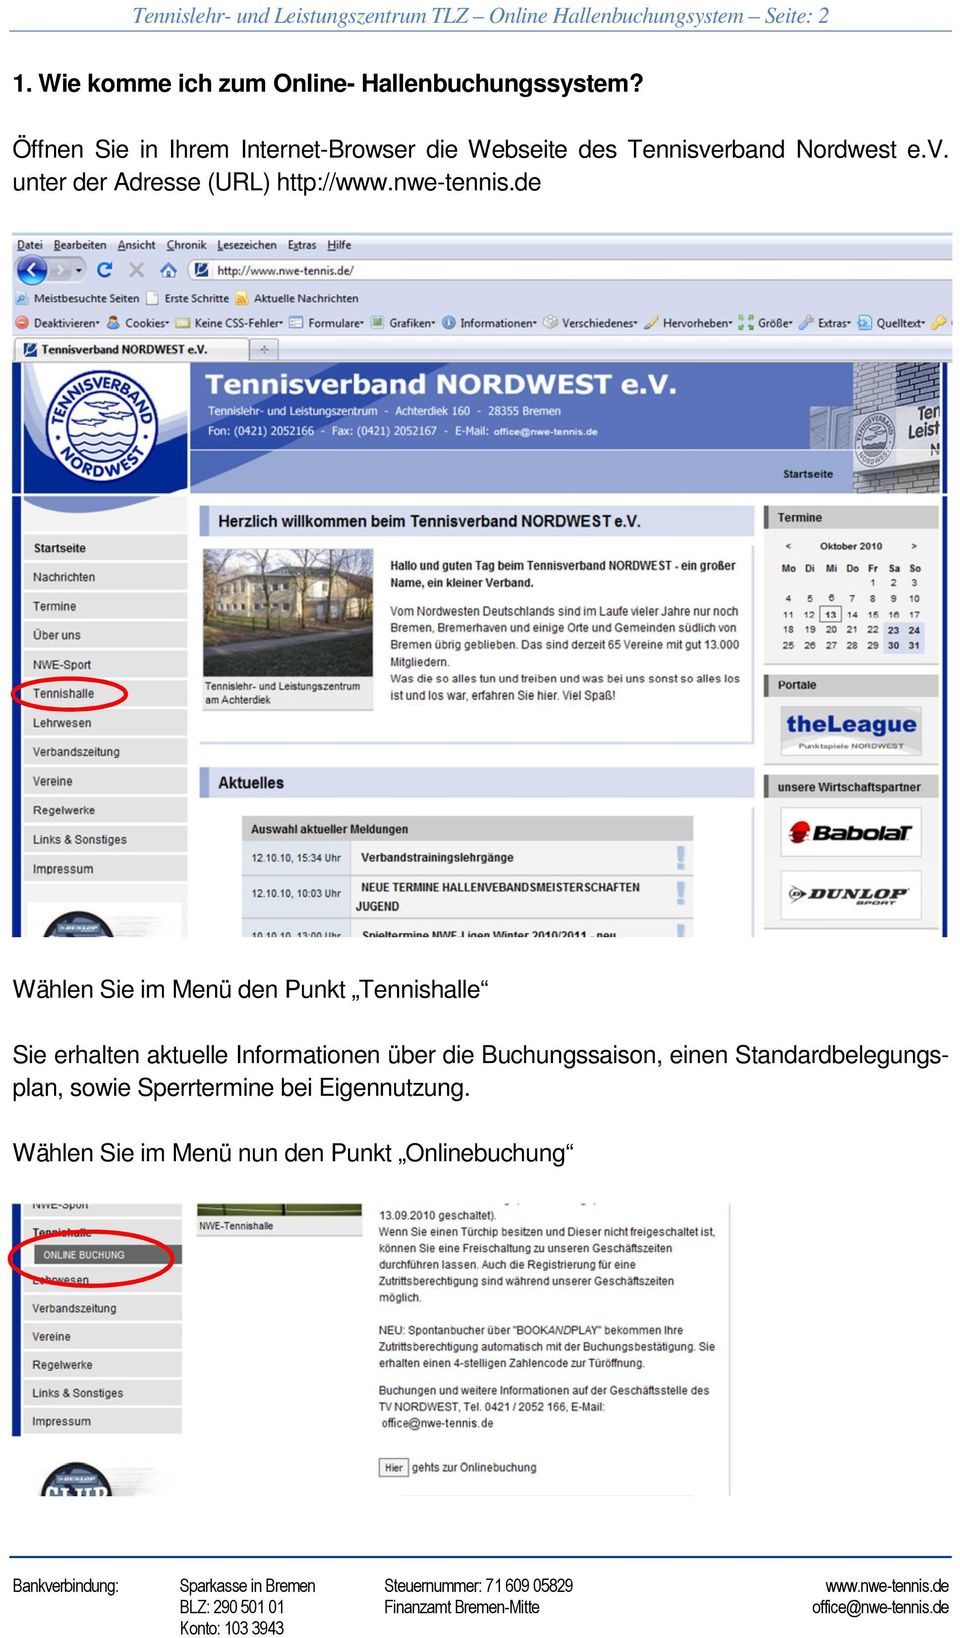 Öffnen Sie in Ihrem Internet-Browser die Webseite des Tennisverband Nordwest e.v. unter der Adresse (URL) http://www.